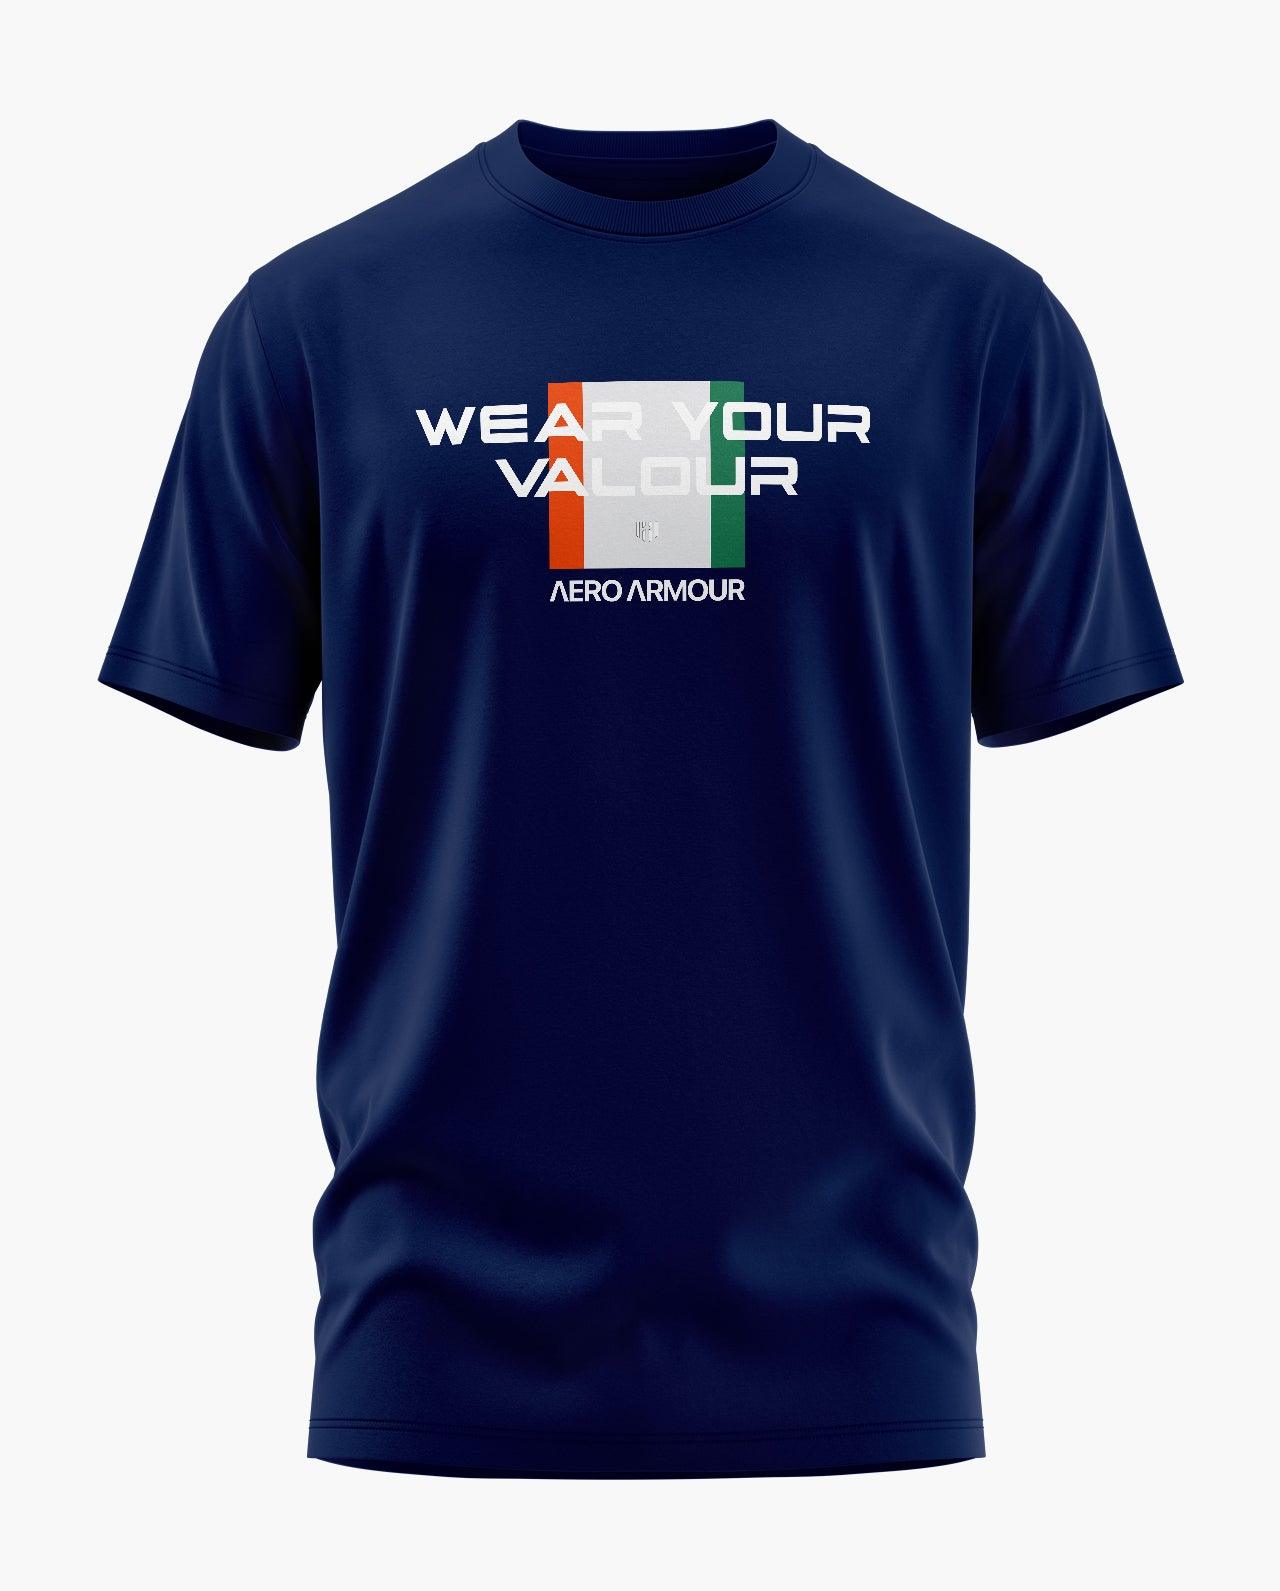 VALOUR INDIA T-Shirt - Aero Armour